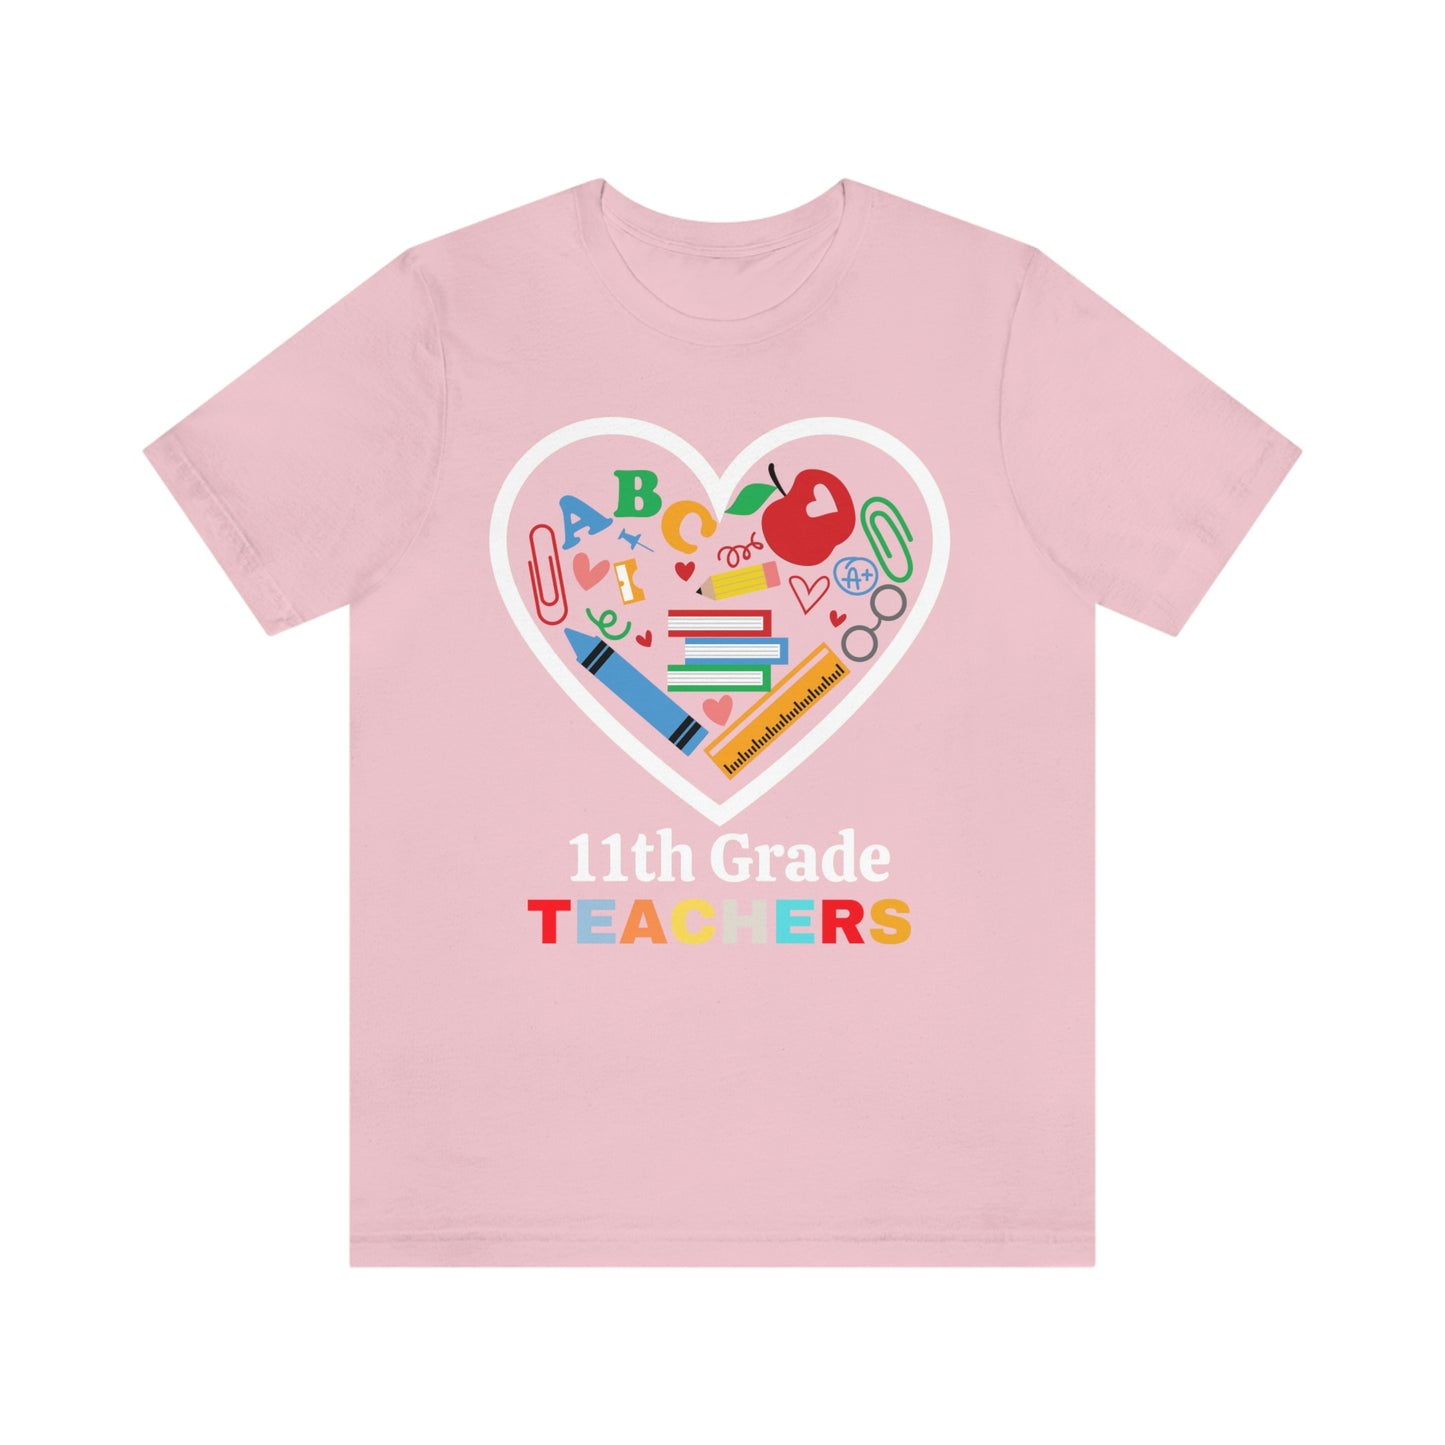 Love 11th Grade Teacher Shirt - Teacher Appreciation Shirt